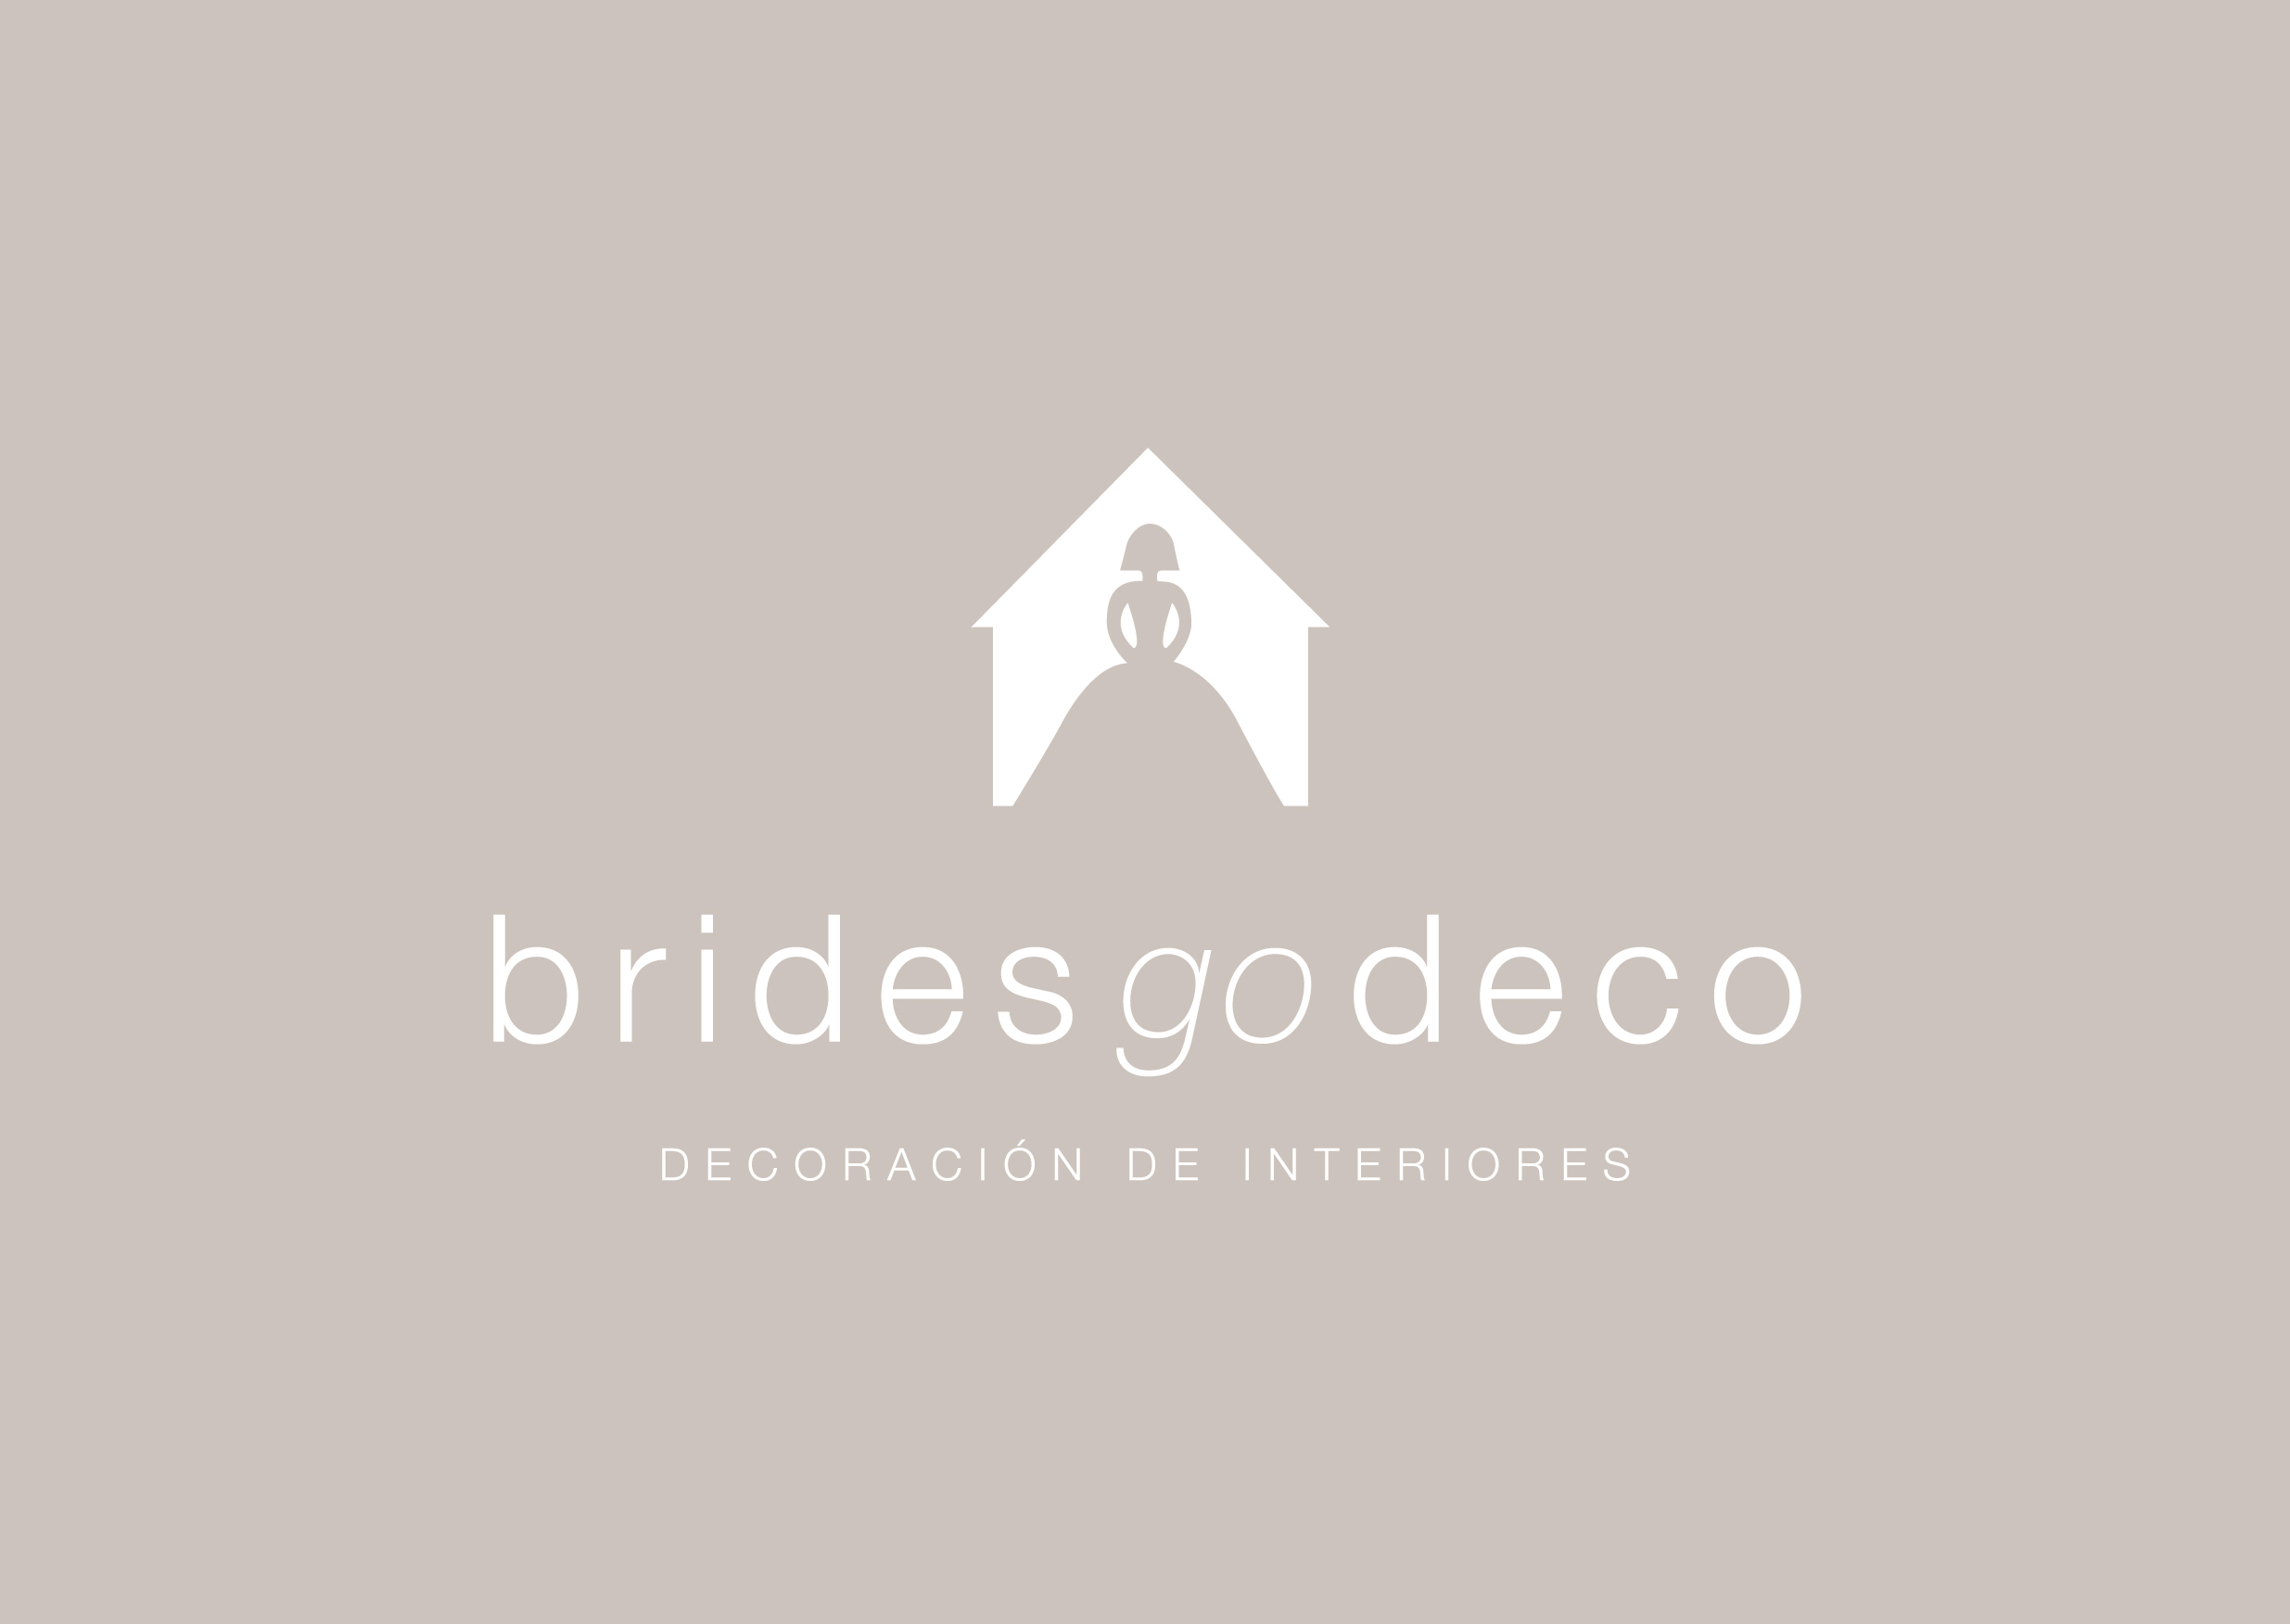 Brides Go Deco